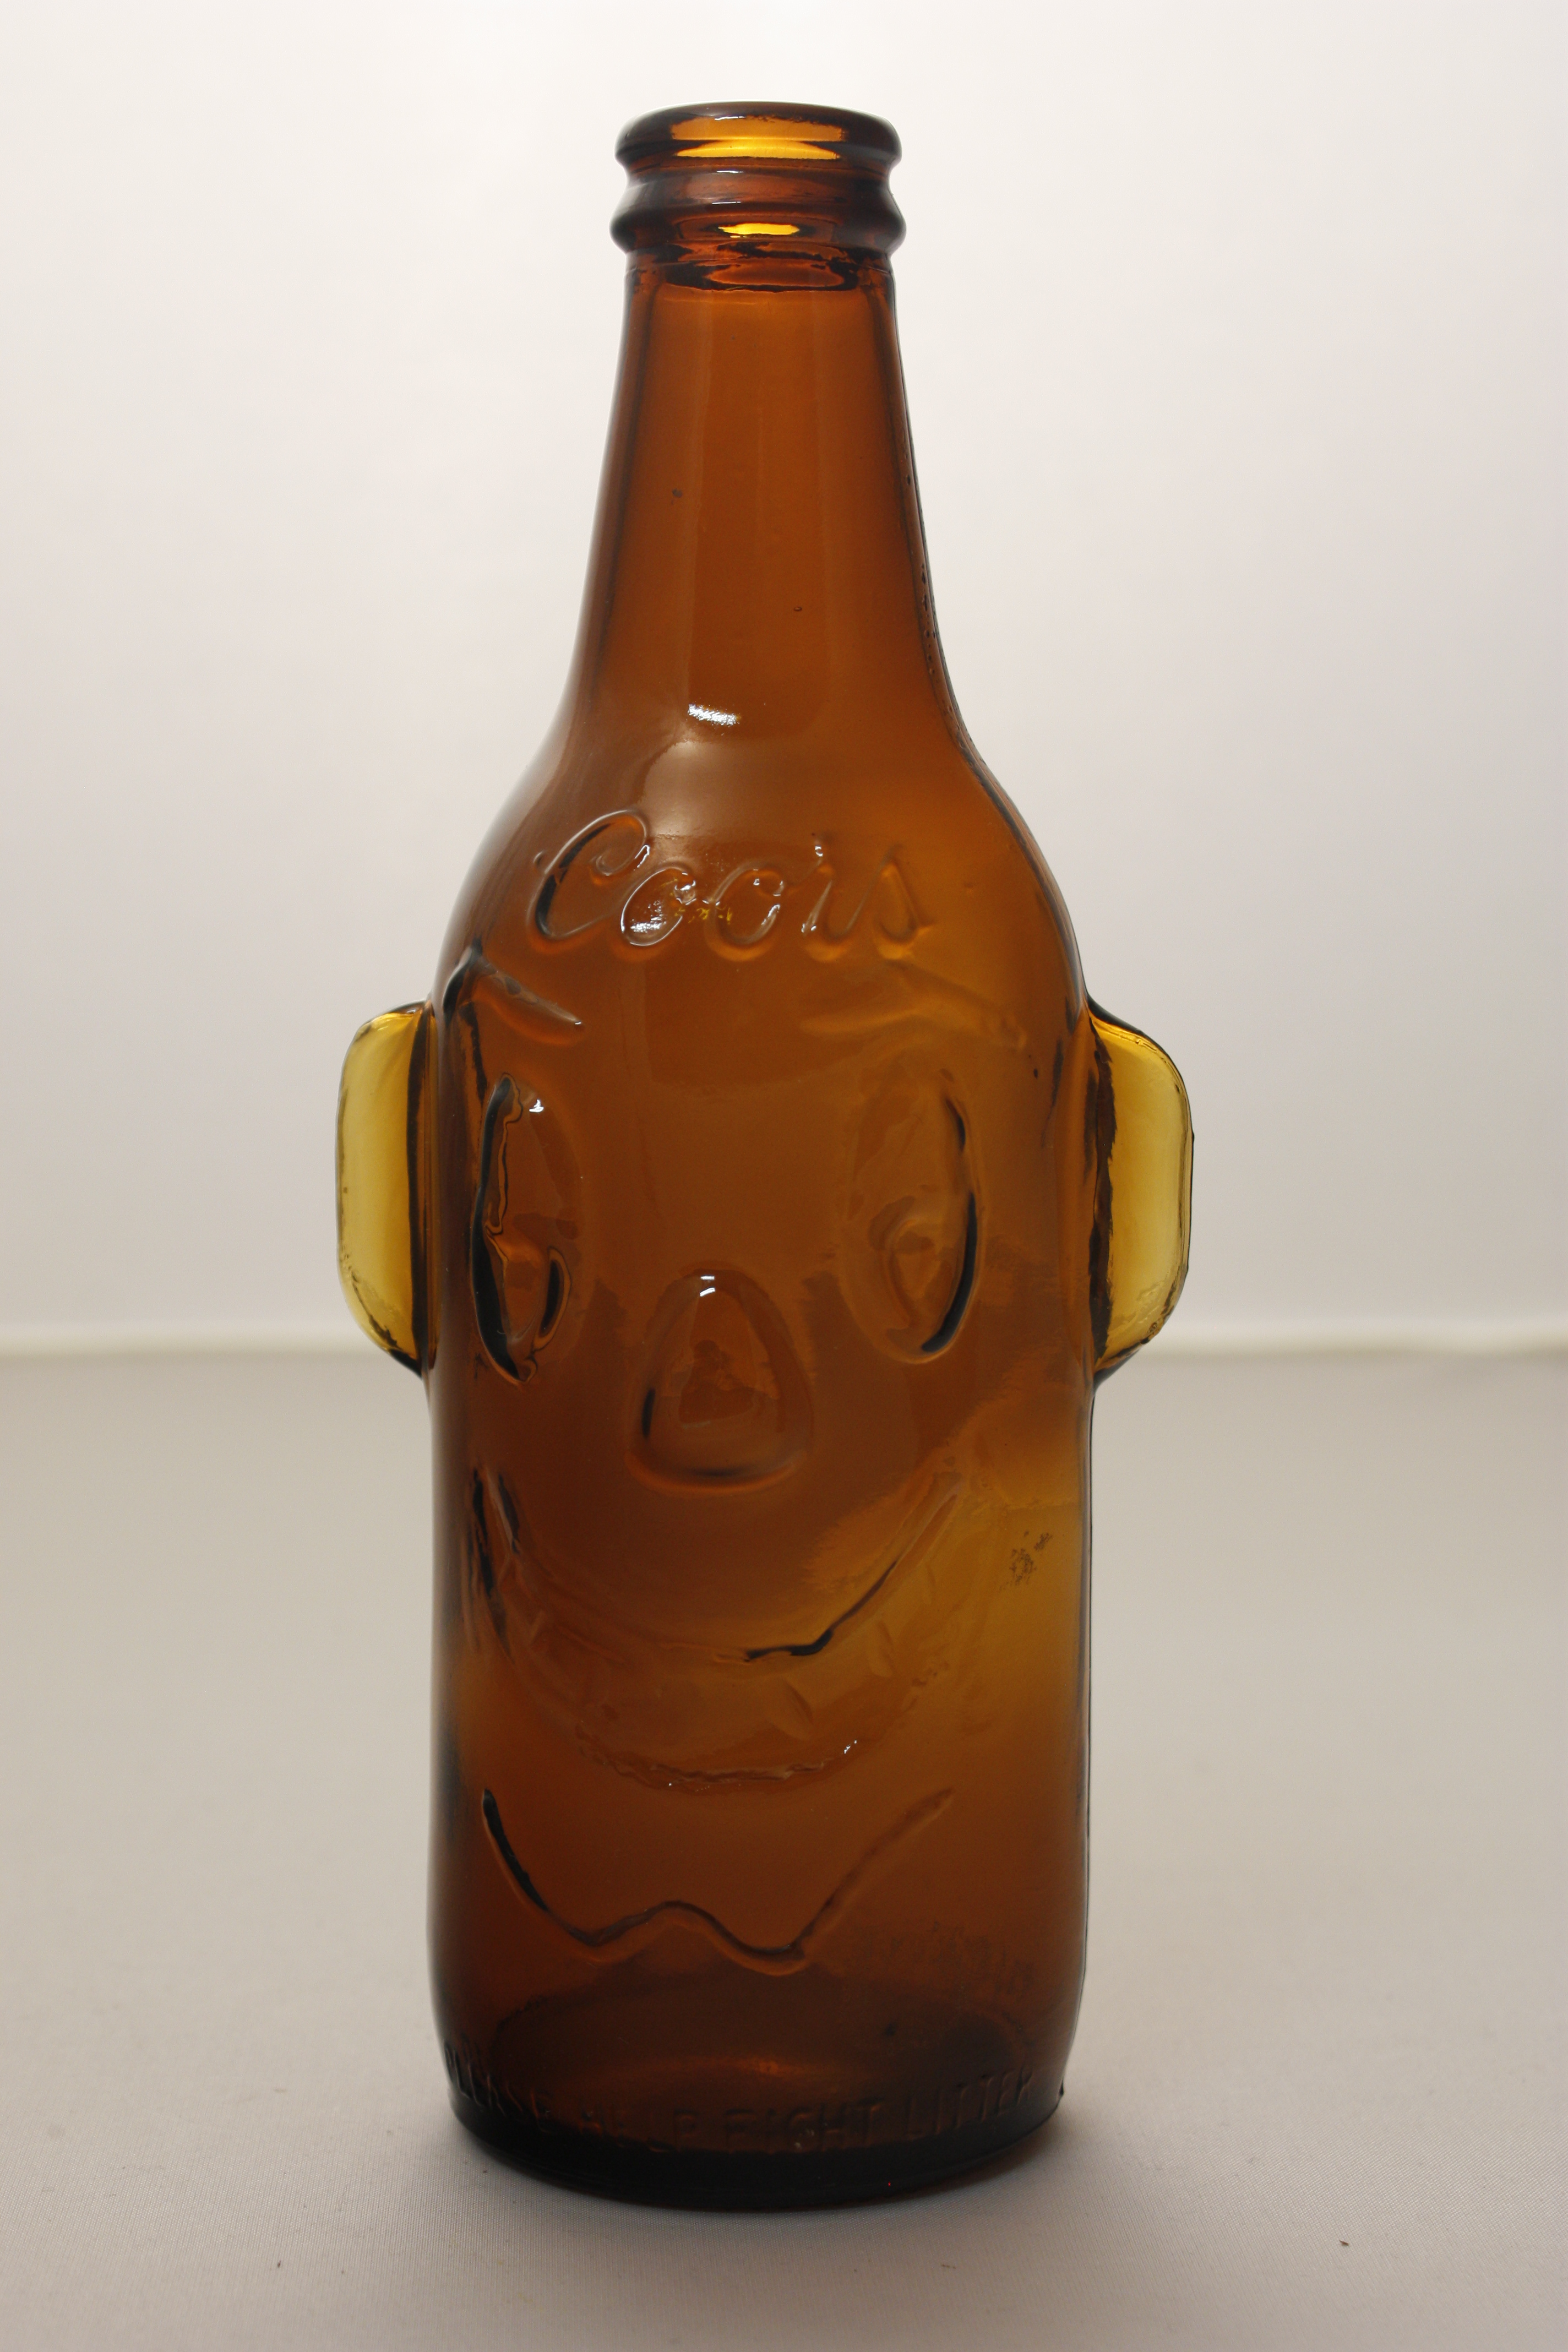 Clown bottle